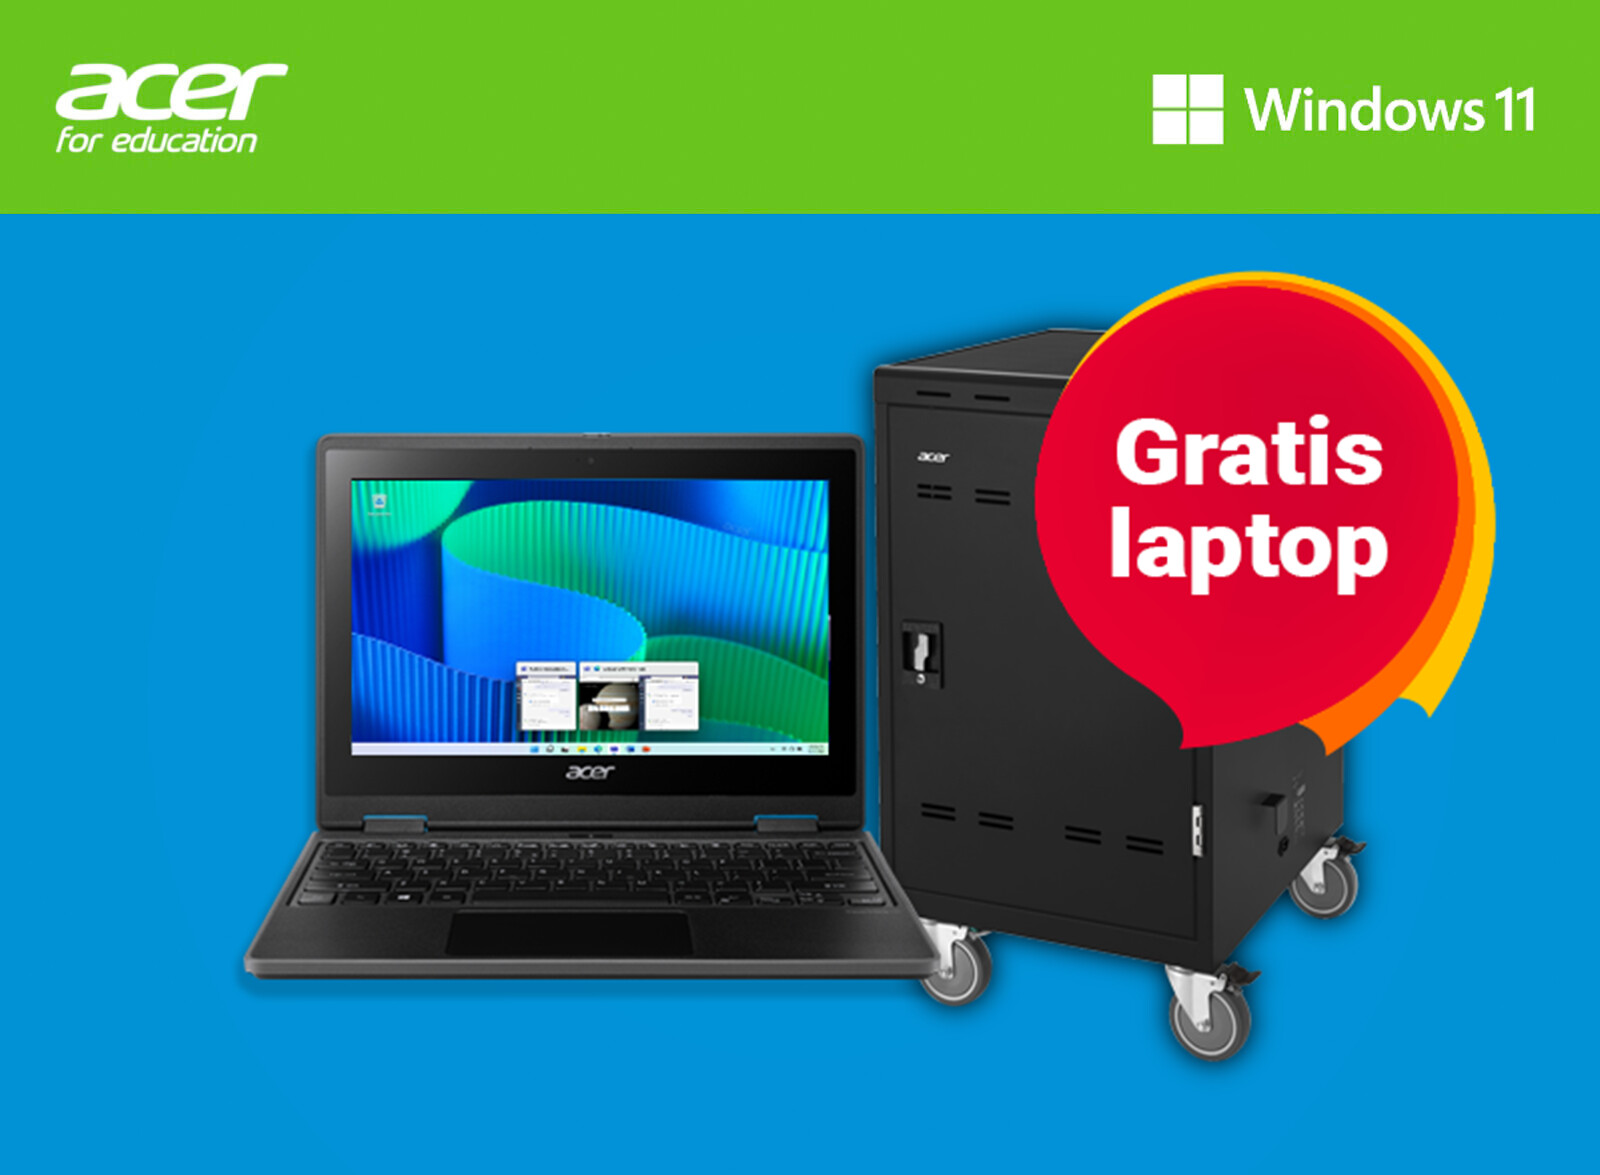 gratis-laptop2-nl.jpg